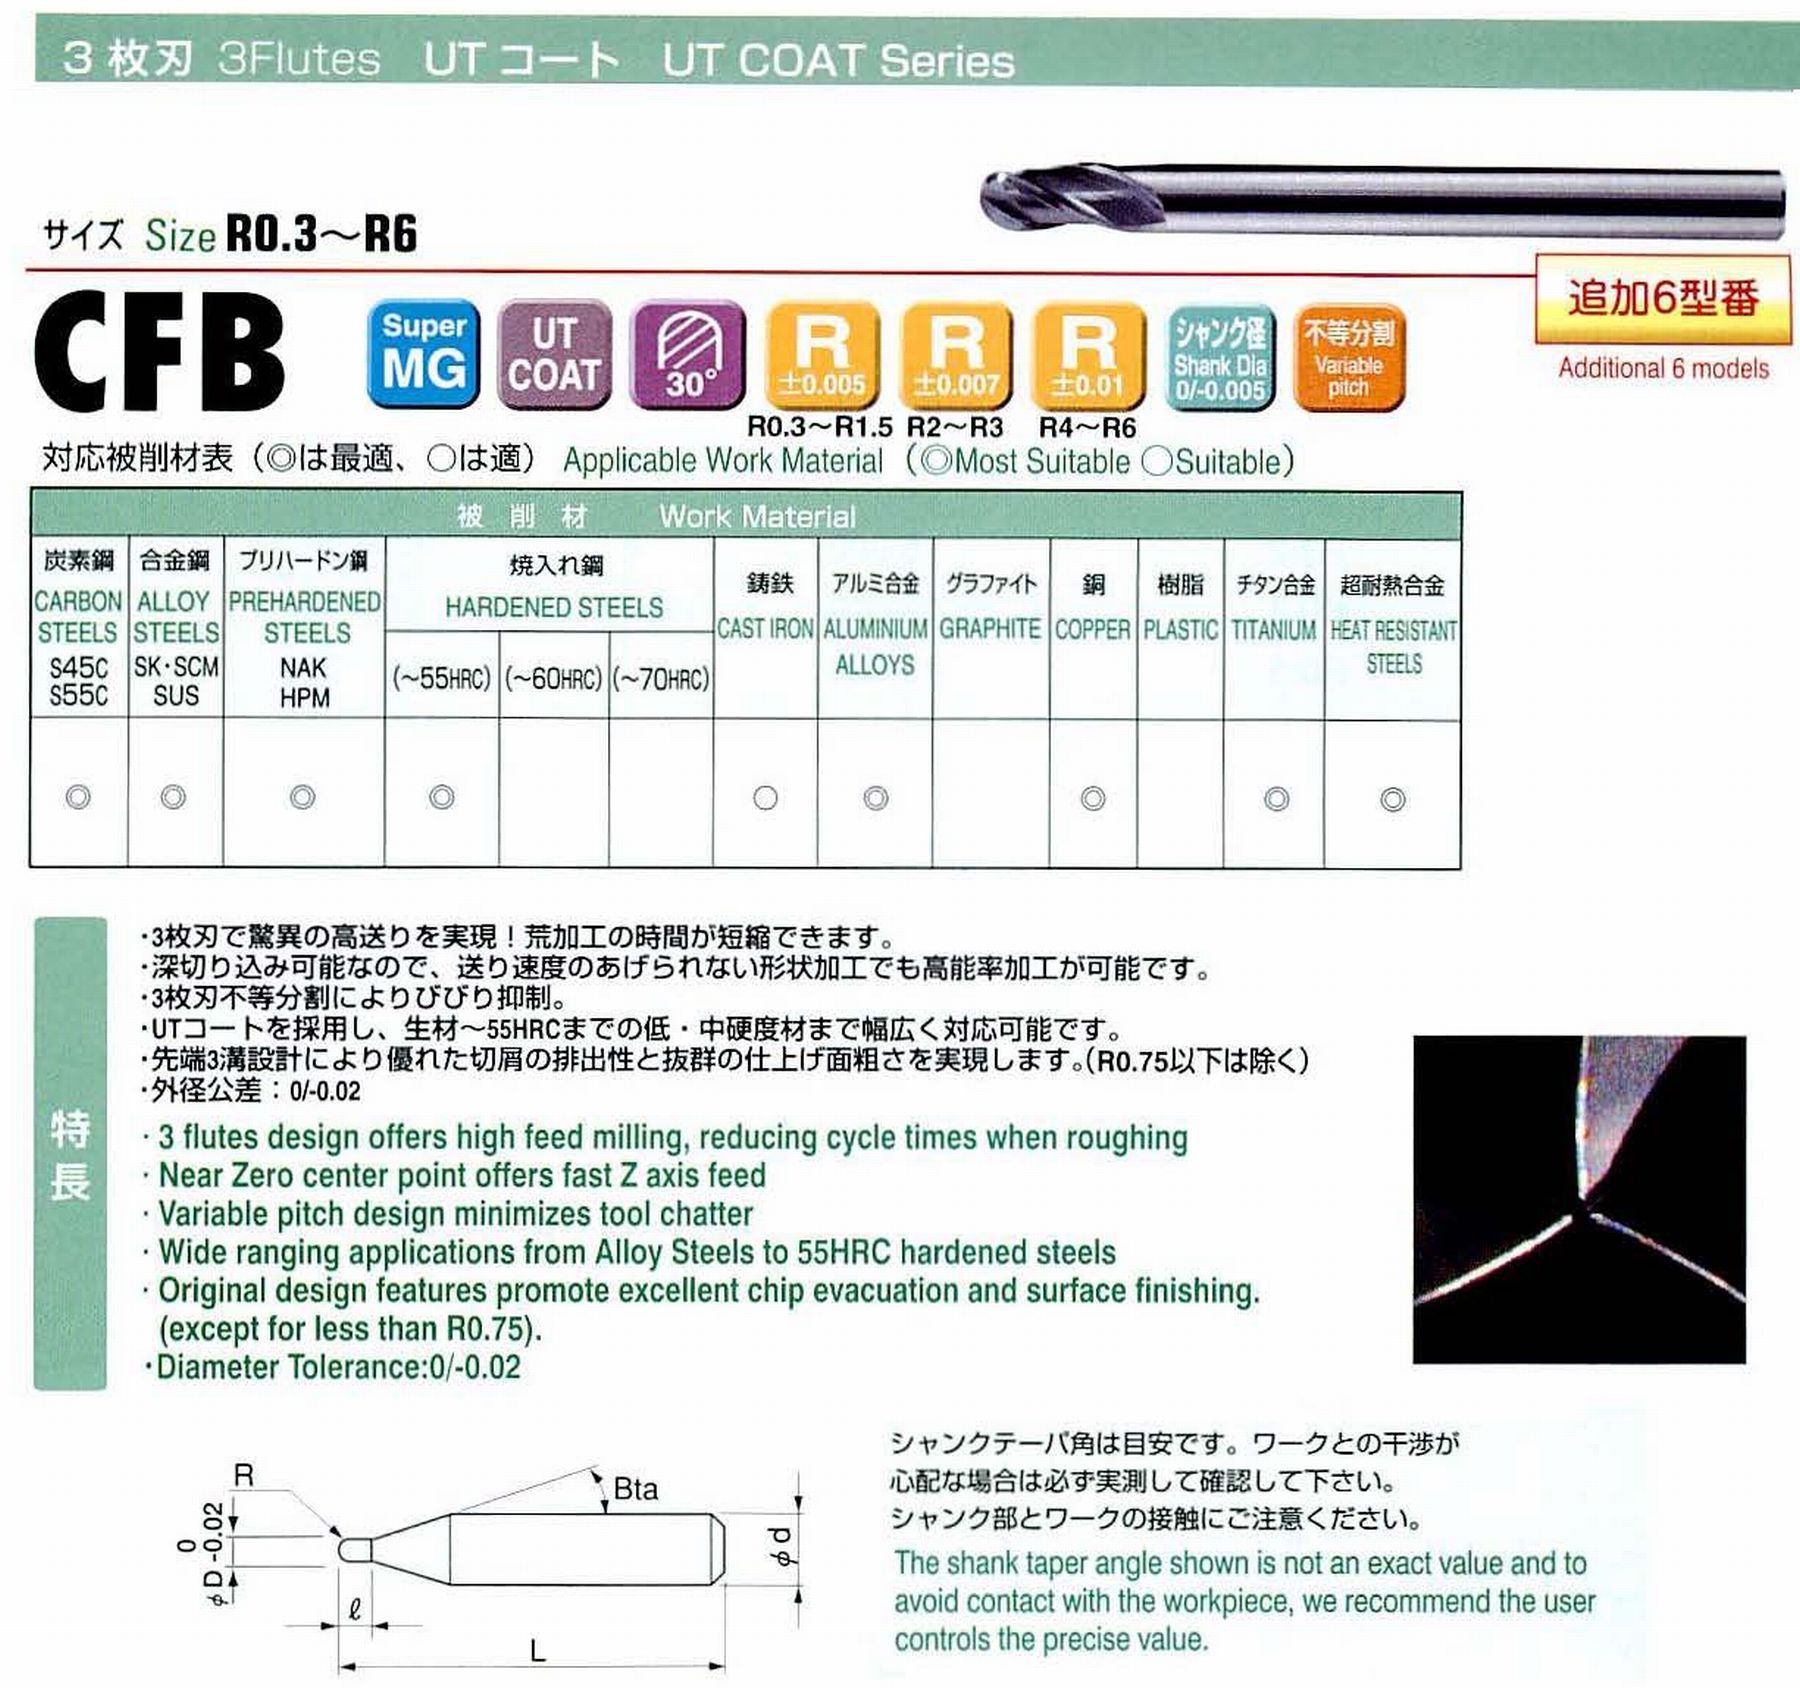 ユニオンツール 3枚刃 CFB3008-0120 ボール半径R0.4 刃長1.2 シャンクテーパ角16° 全長50 シャンク径4